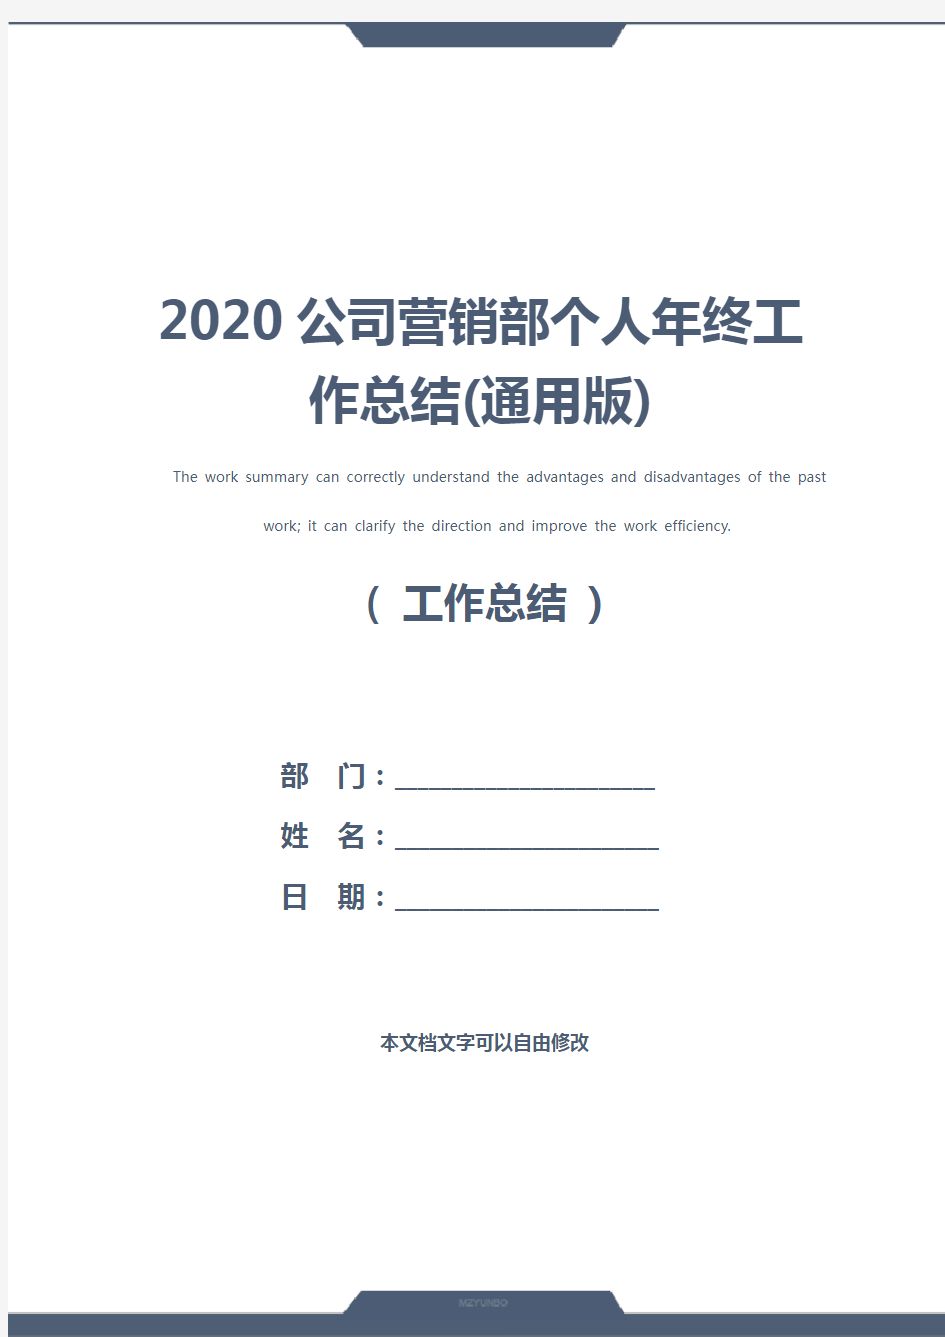 2020公司营销部个人年终工作总结(通用版)